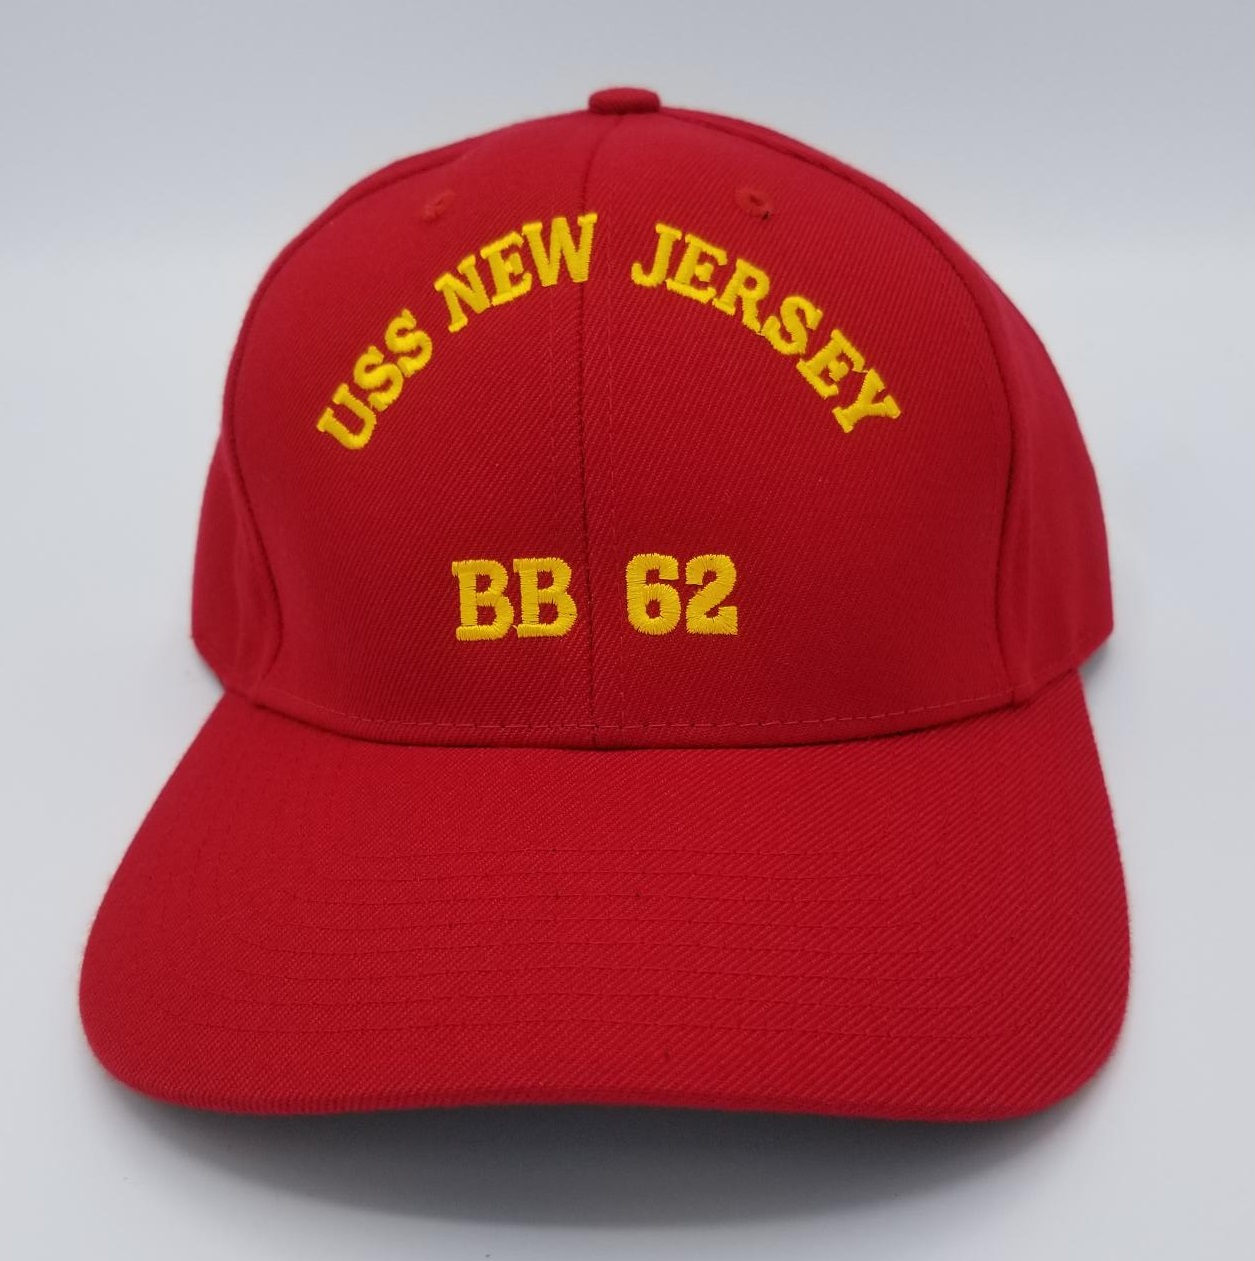 USS New Jersey BB-62 Cap